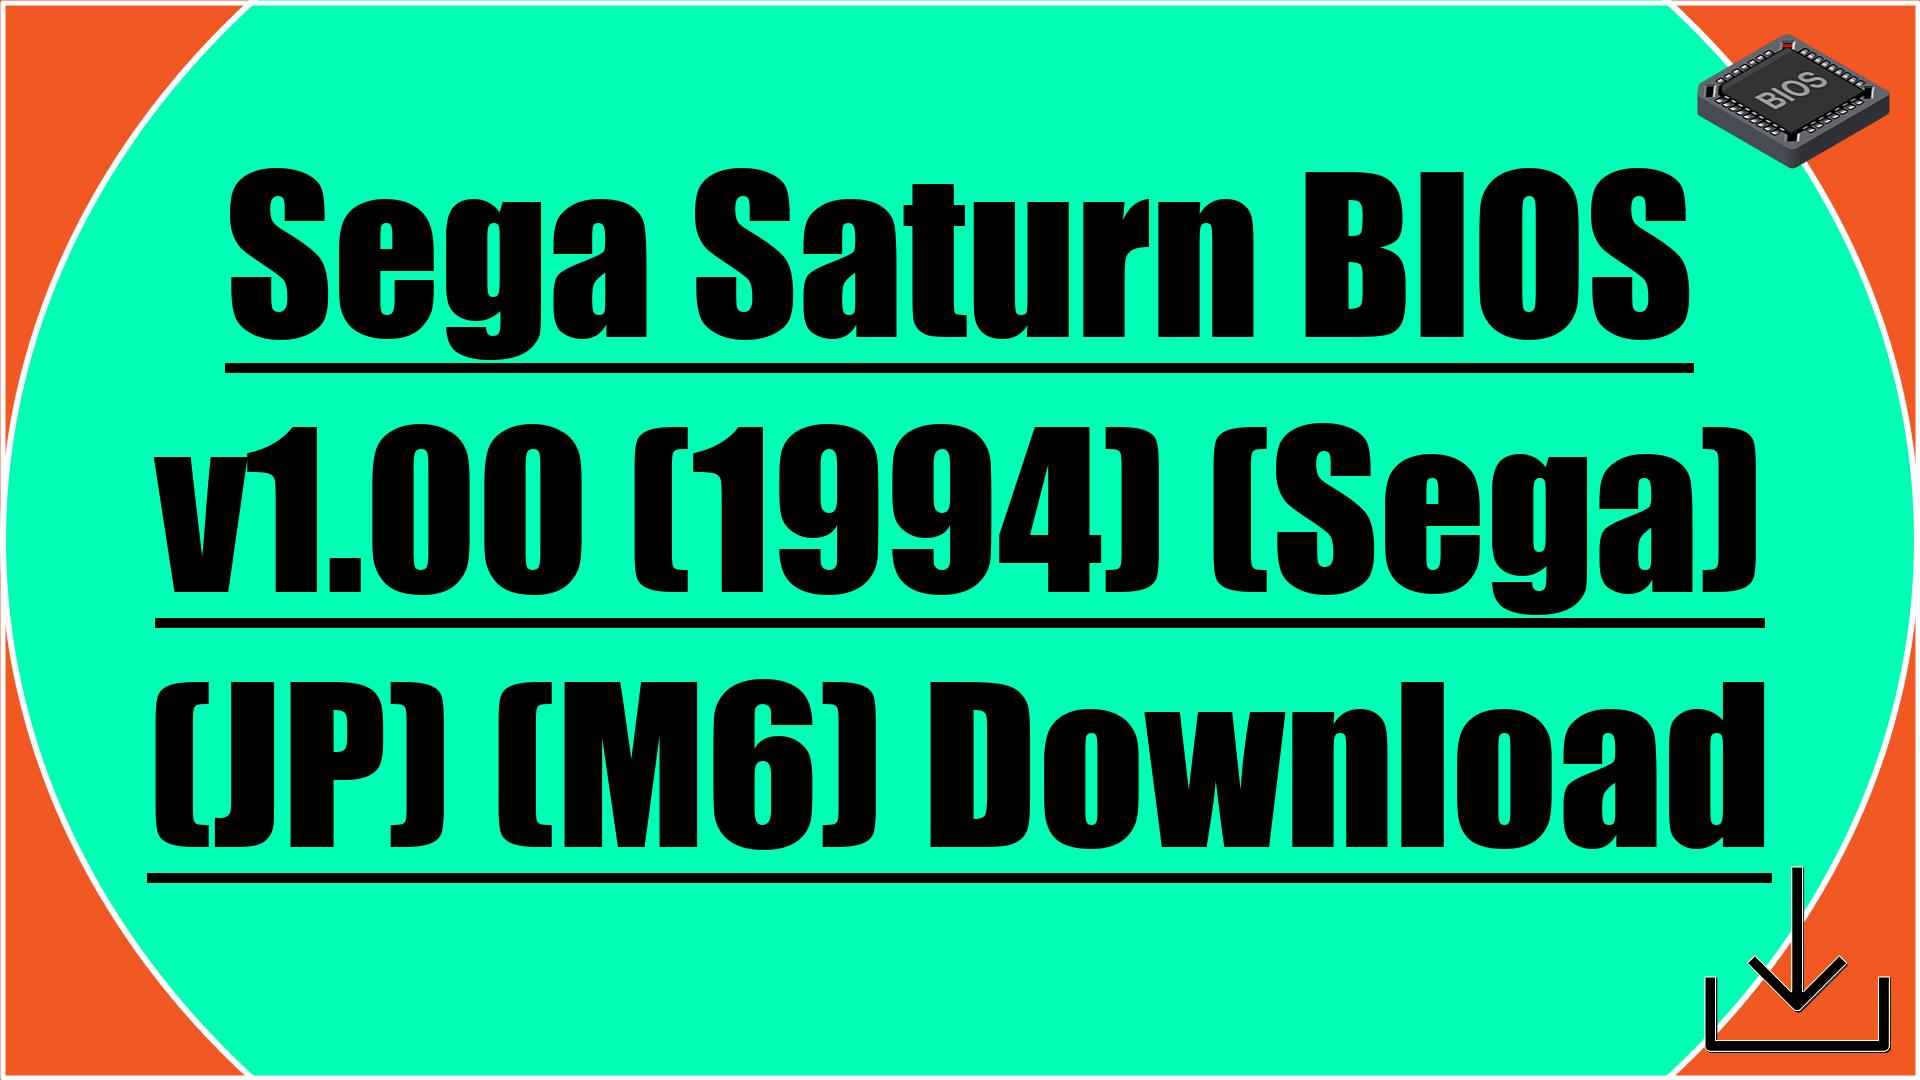 Sega Saturn BIOS v1.00 (1994) (Sega) (JP) (M6) Download